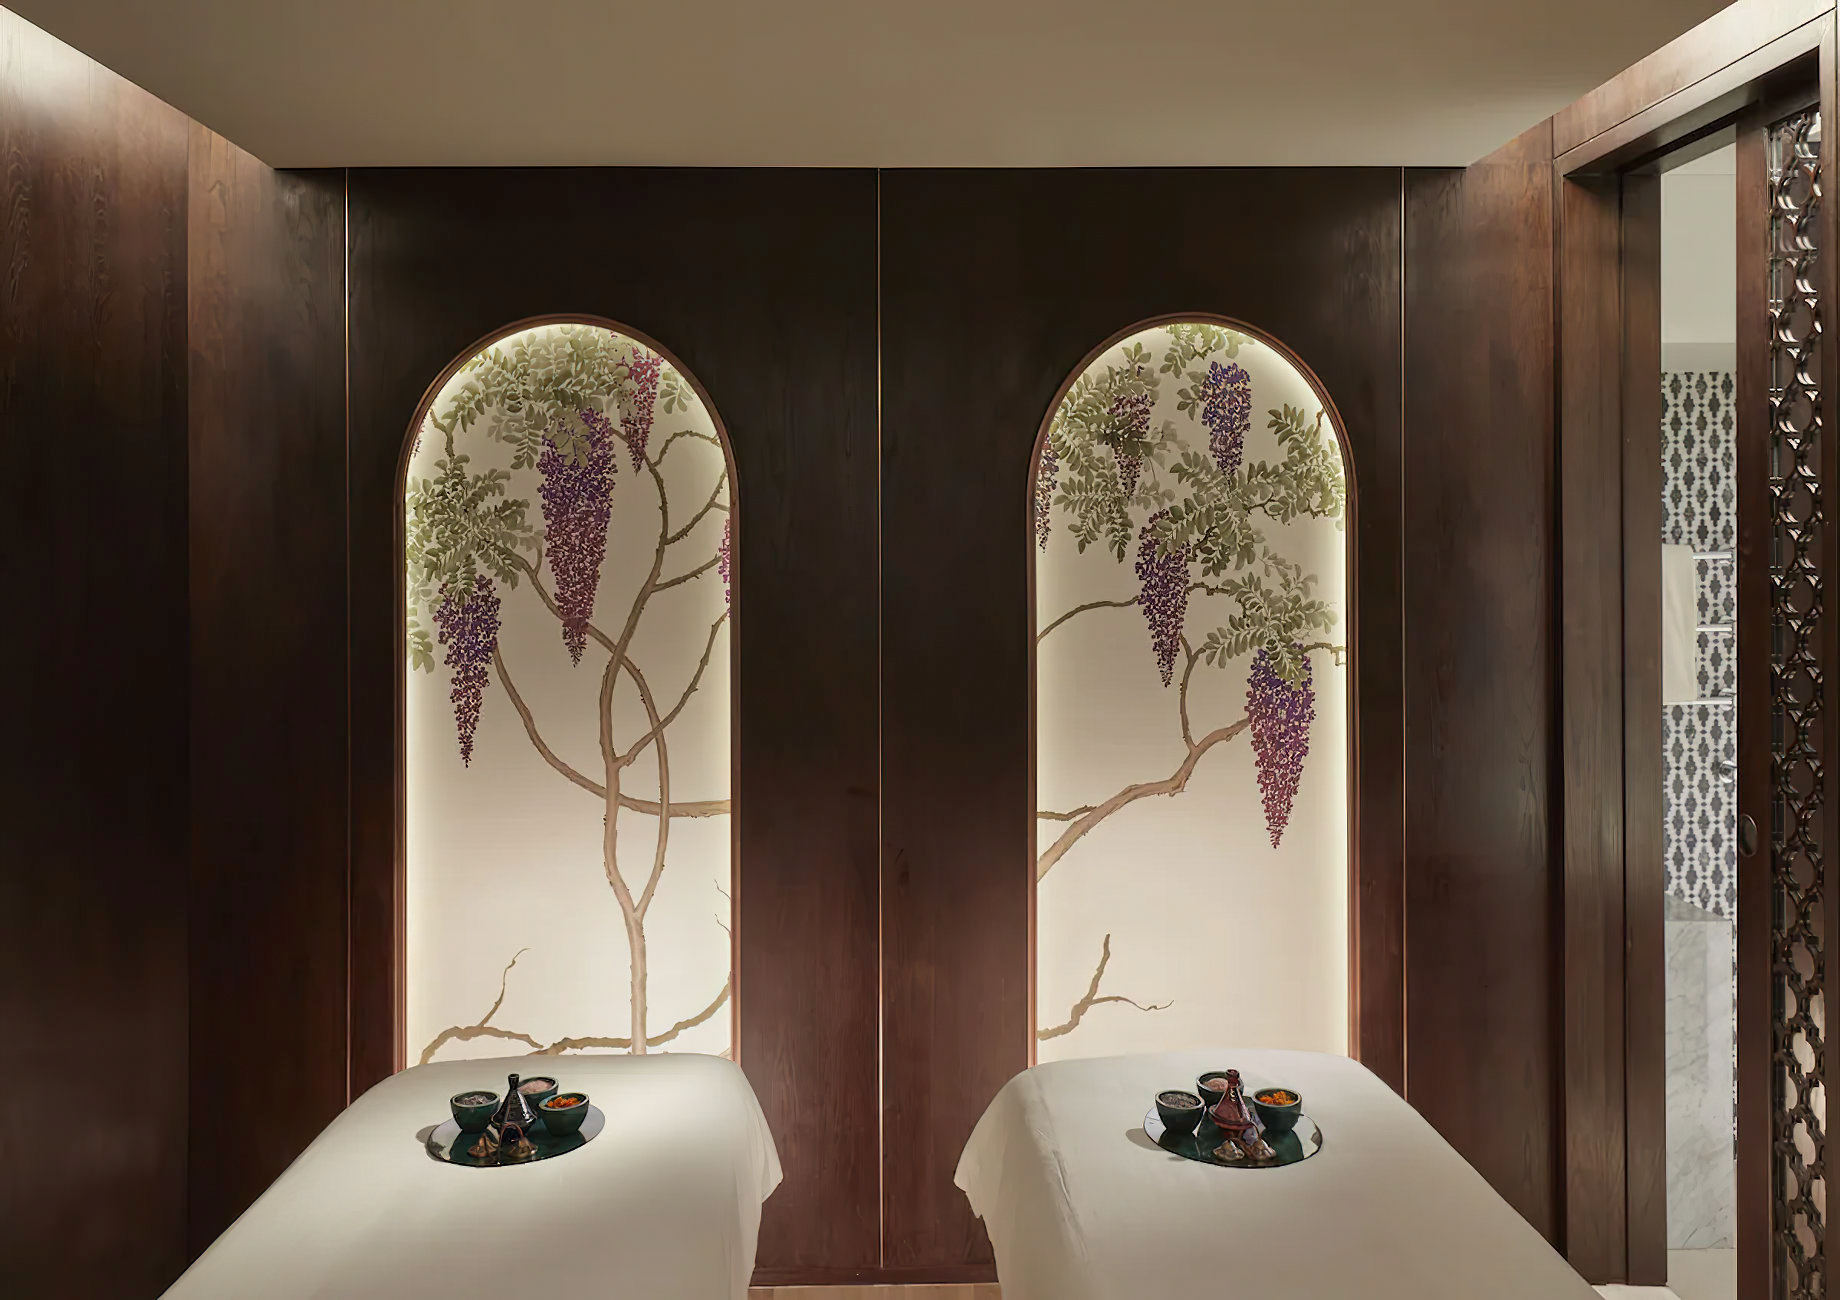 Mandarin Oriental Wangfujing, Beijing Hotel – Beijing, China – Spa Treatment Room